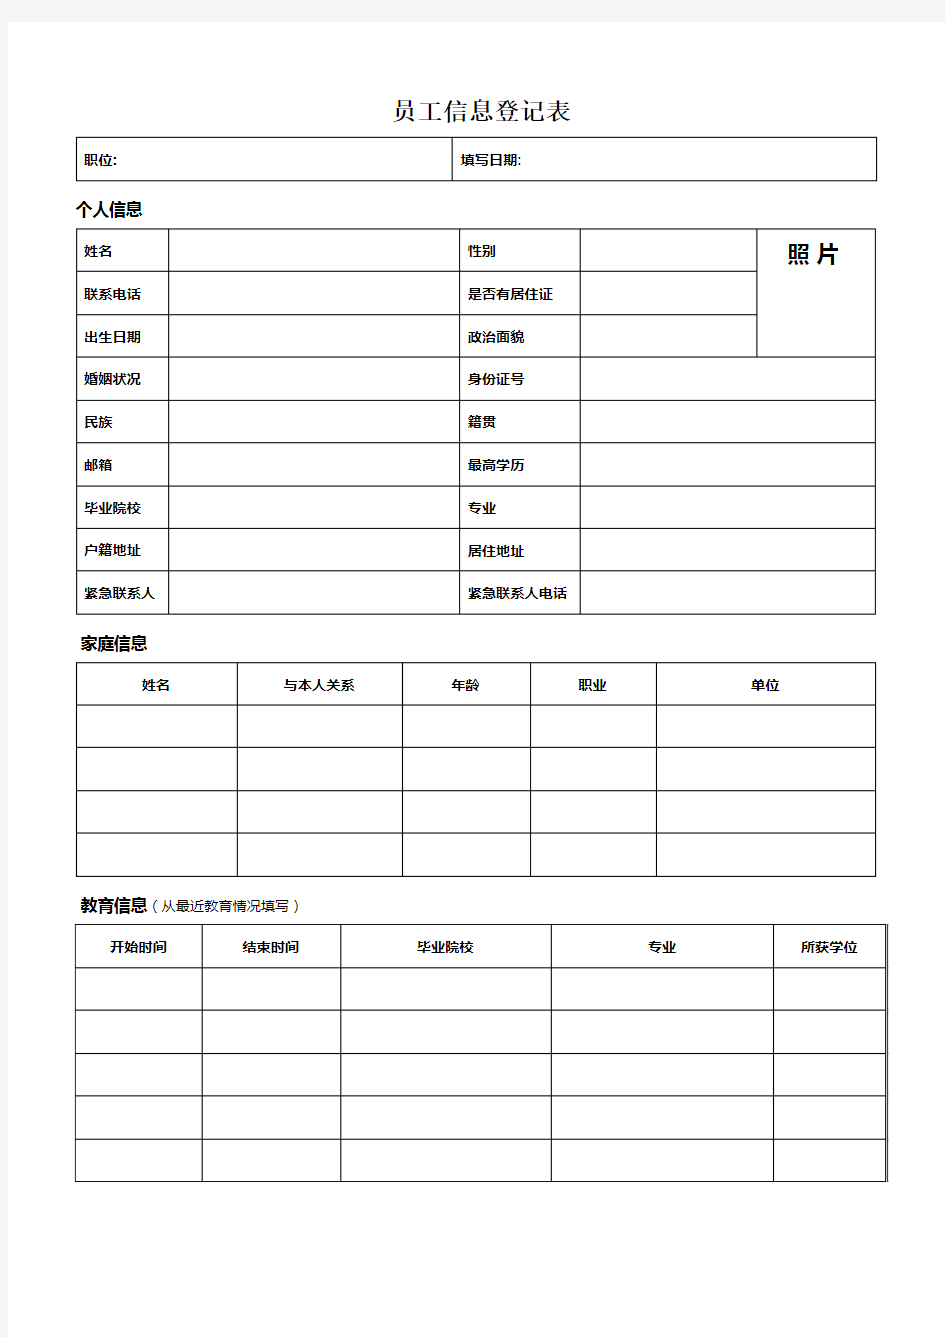 员工个人信息登记表 (1)